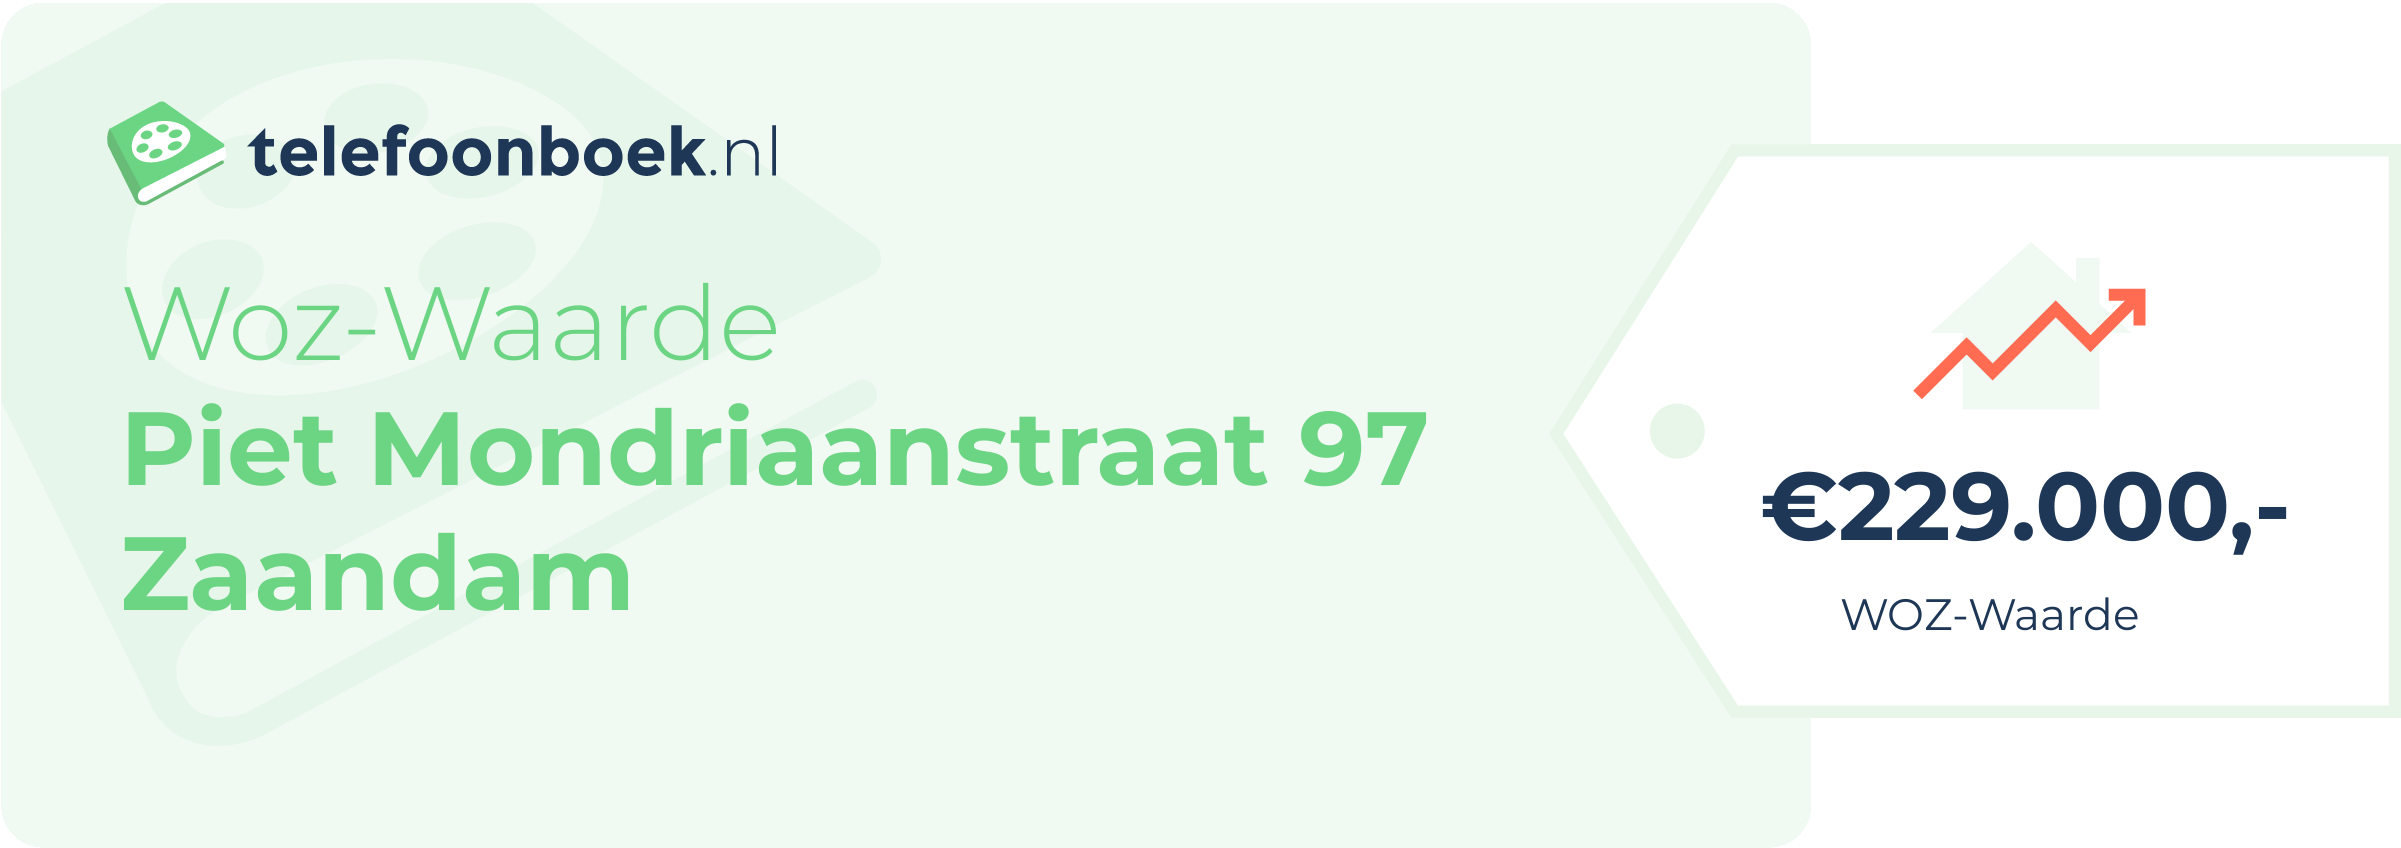 WOZ-waarde Piet Mondriaanstraat 97 Zaandam